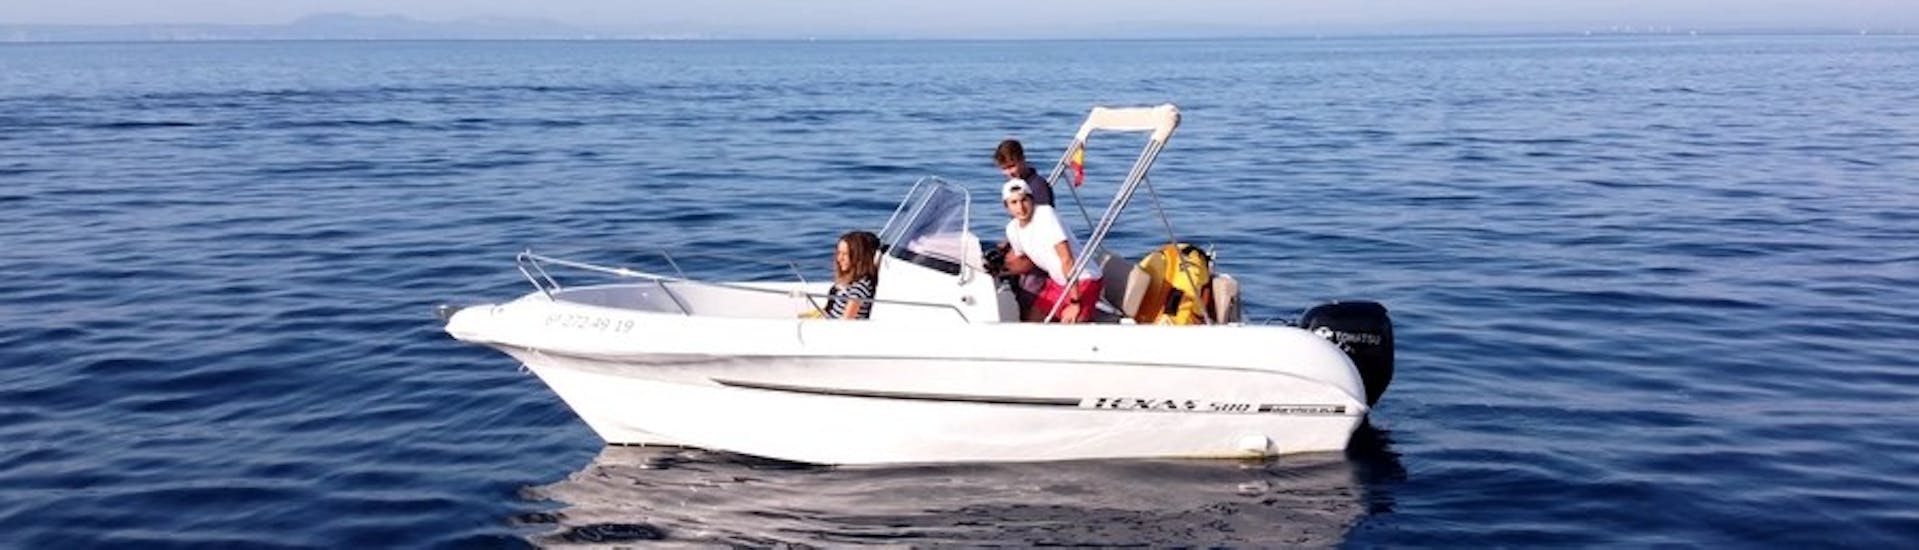 De moderne TEXAS 580 motorboot met een groep deelnemers die plezier hebben tijdens het varen op het turquoise water van de rozenbaai tijdens een bootverhuur in Costa Brava voor maximaal 6 personen met vaarbewijs bij Maxi Boats.